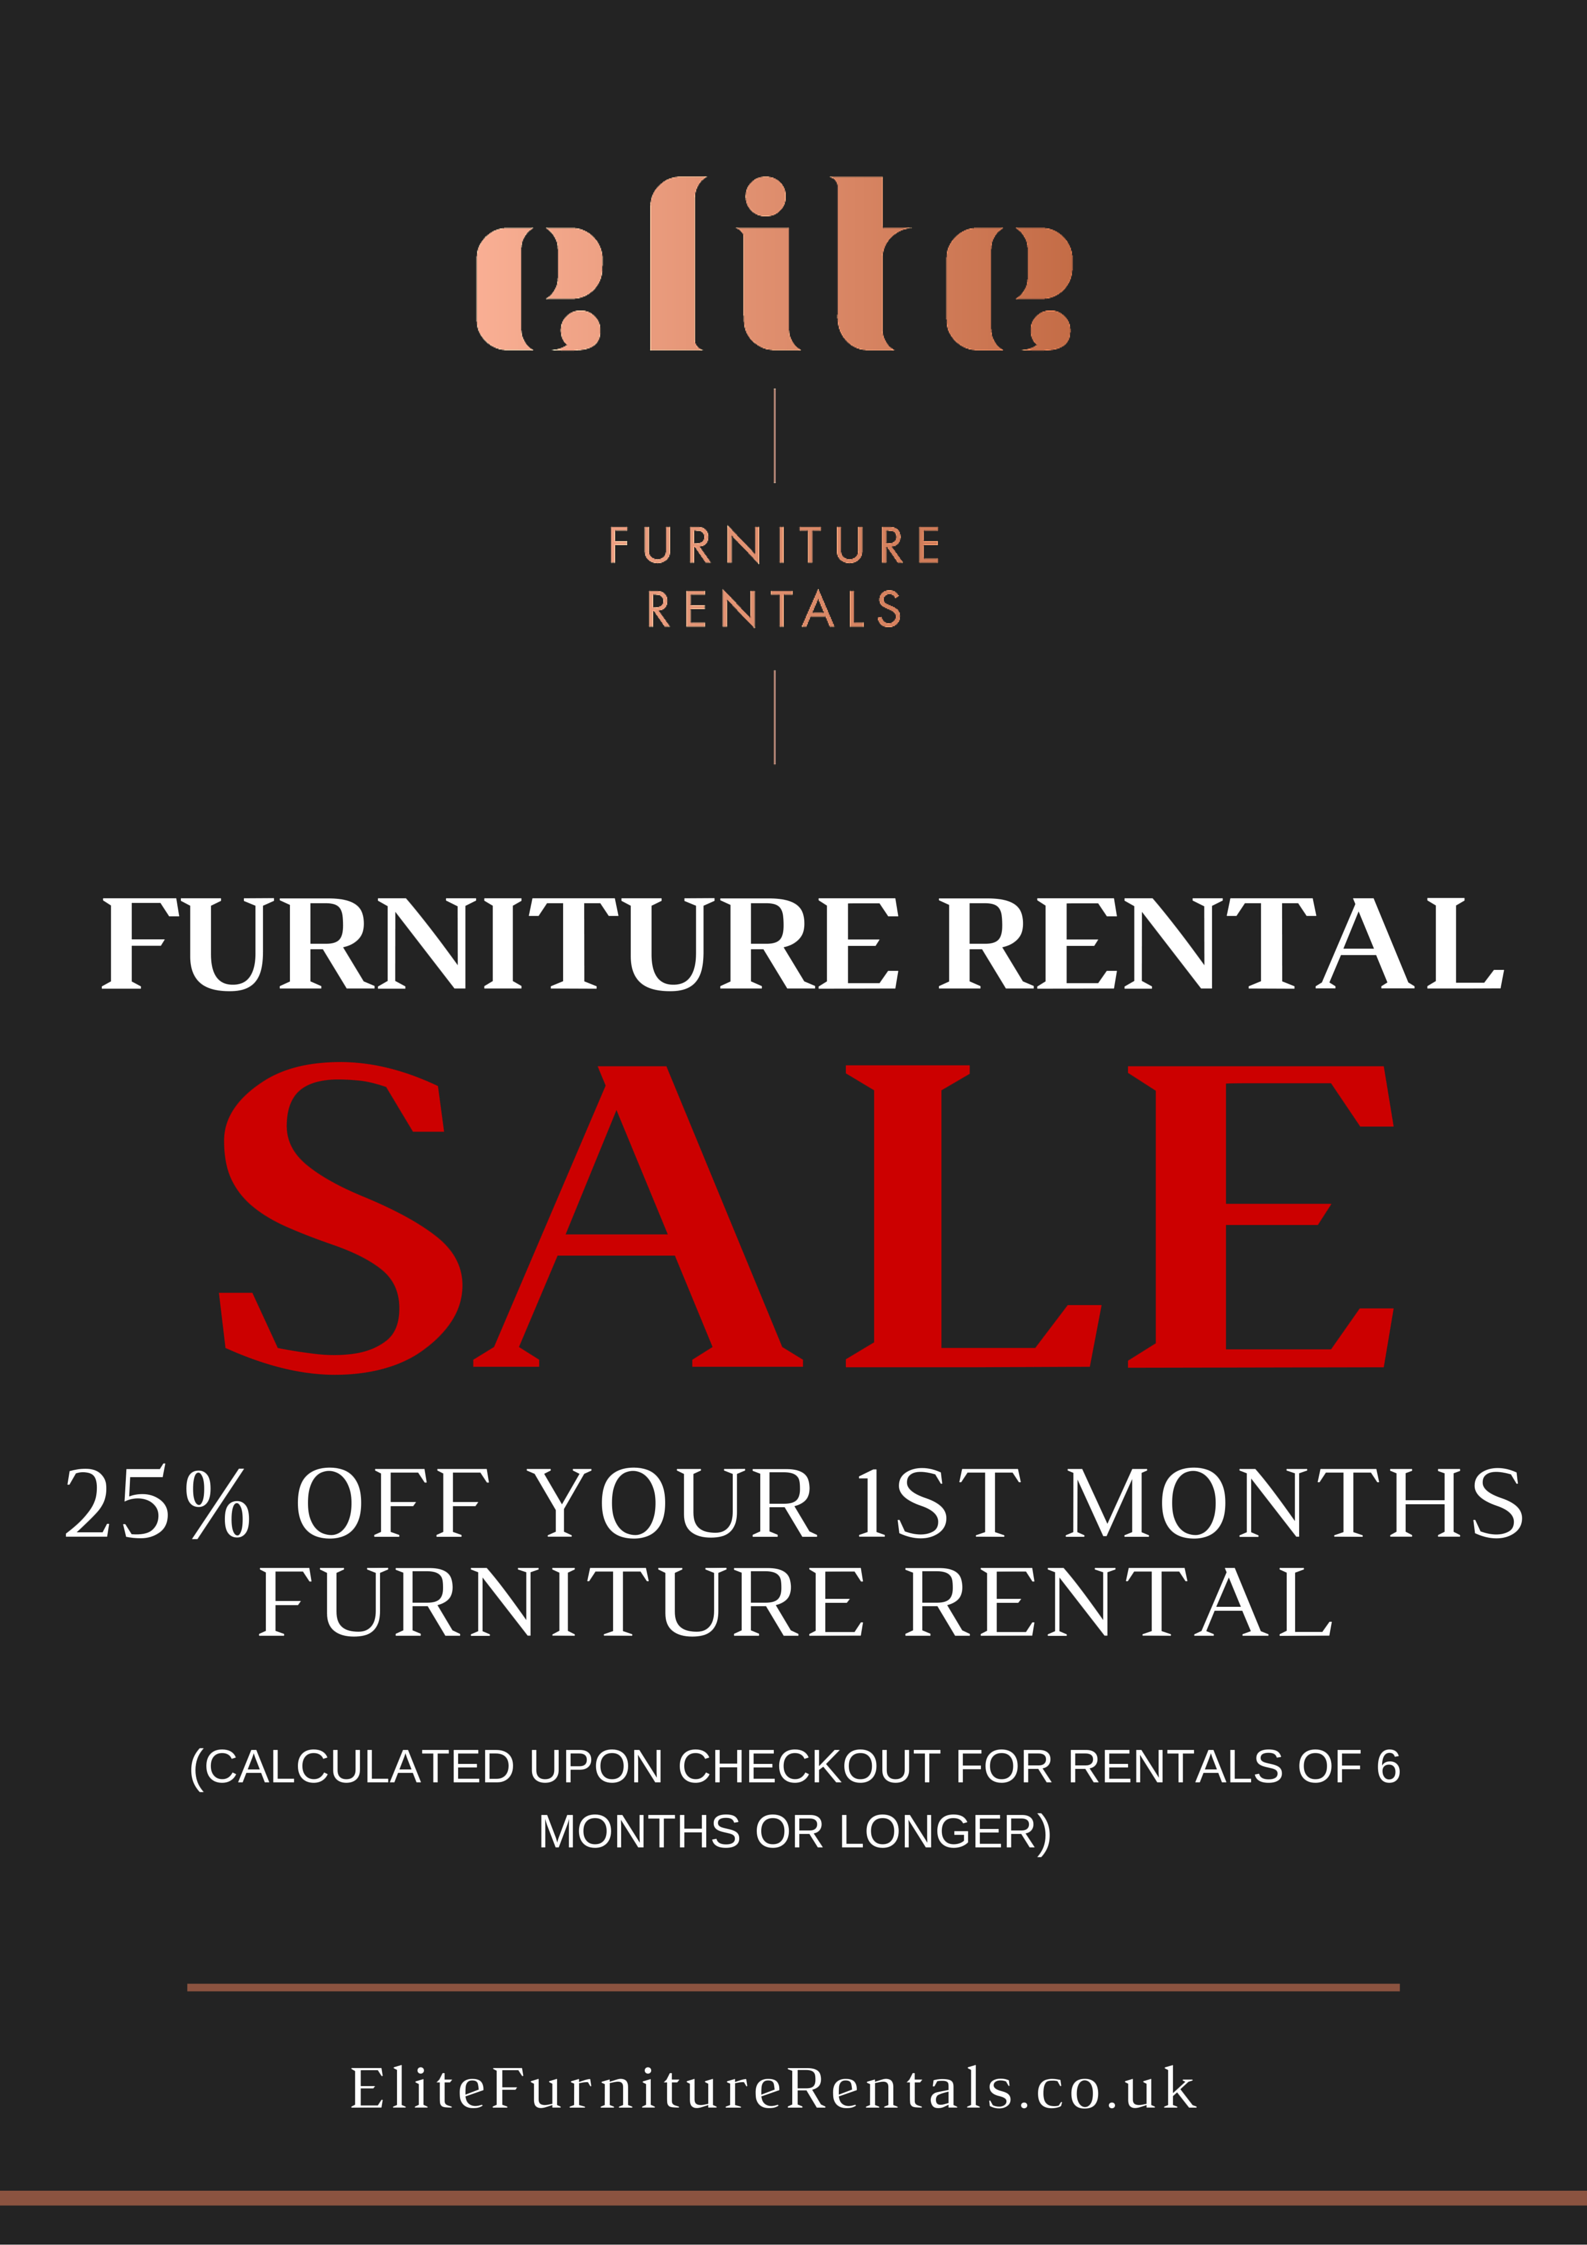 Elite Furniture Rentals Sale offer